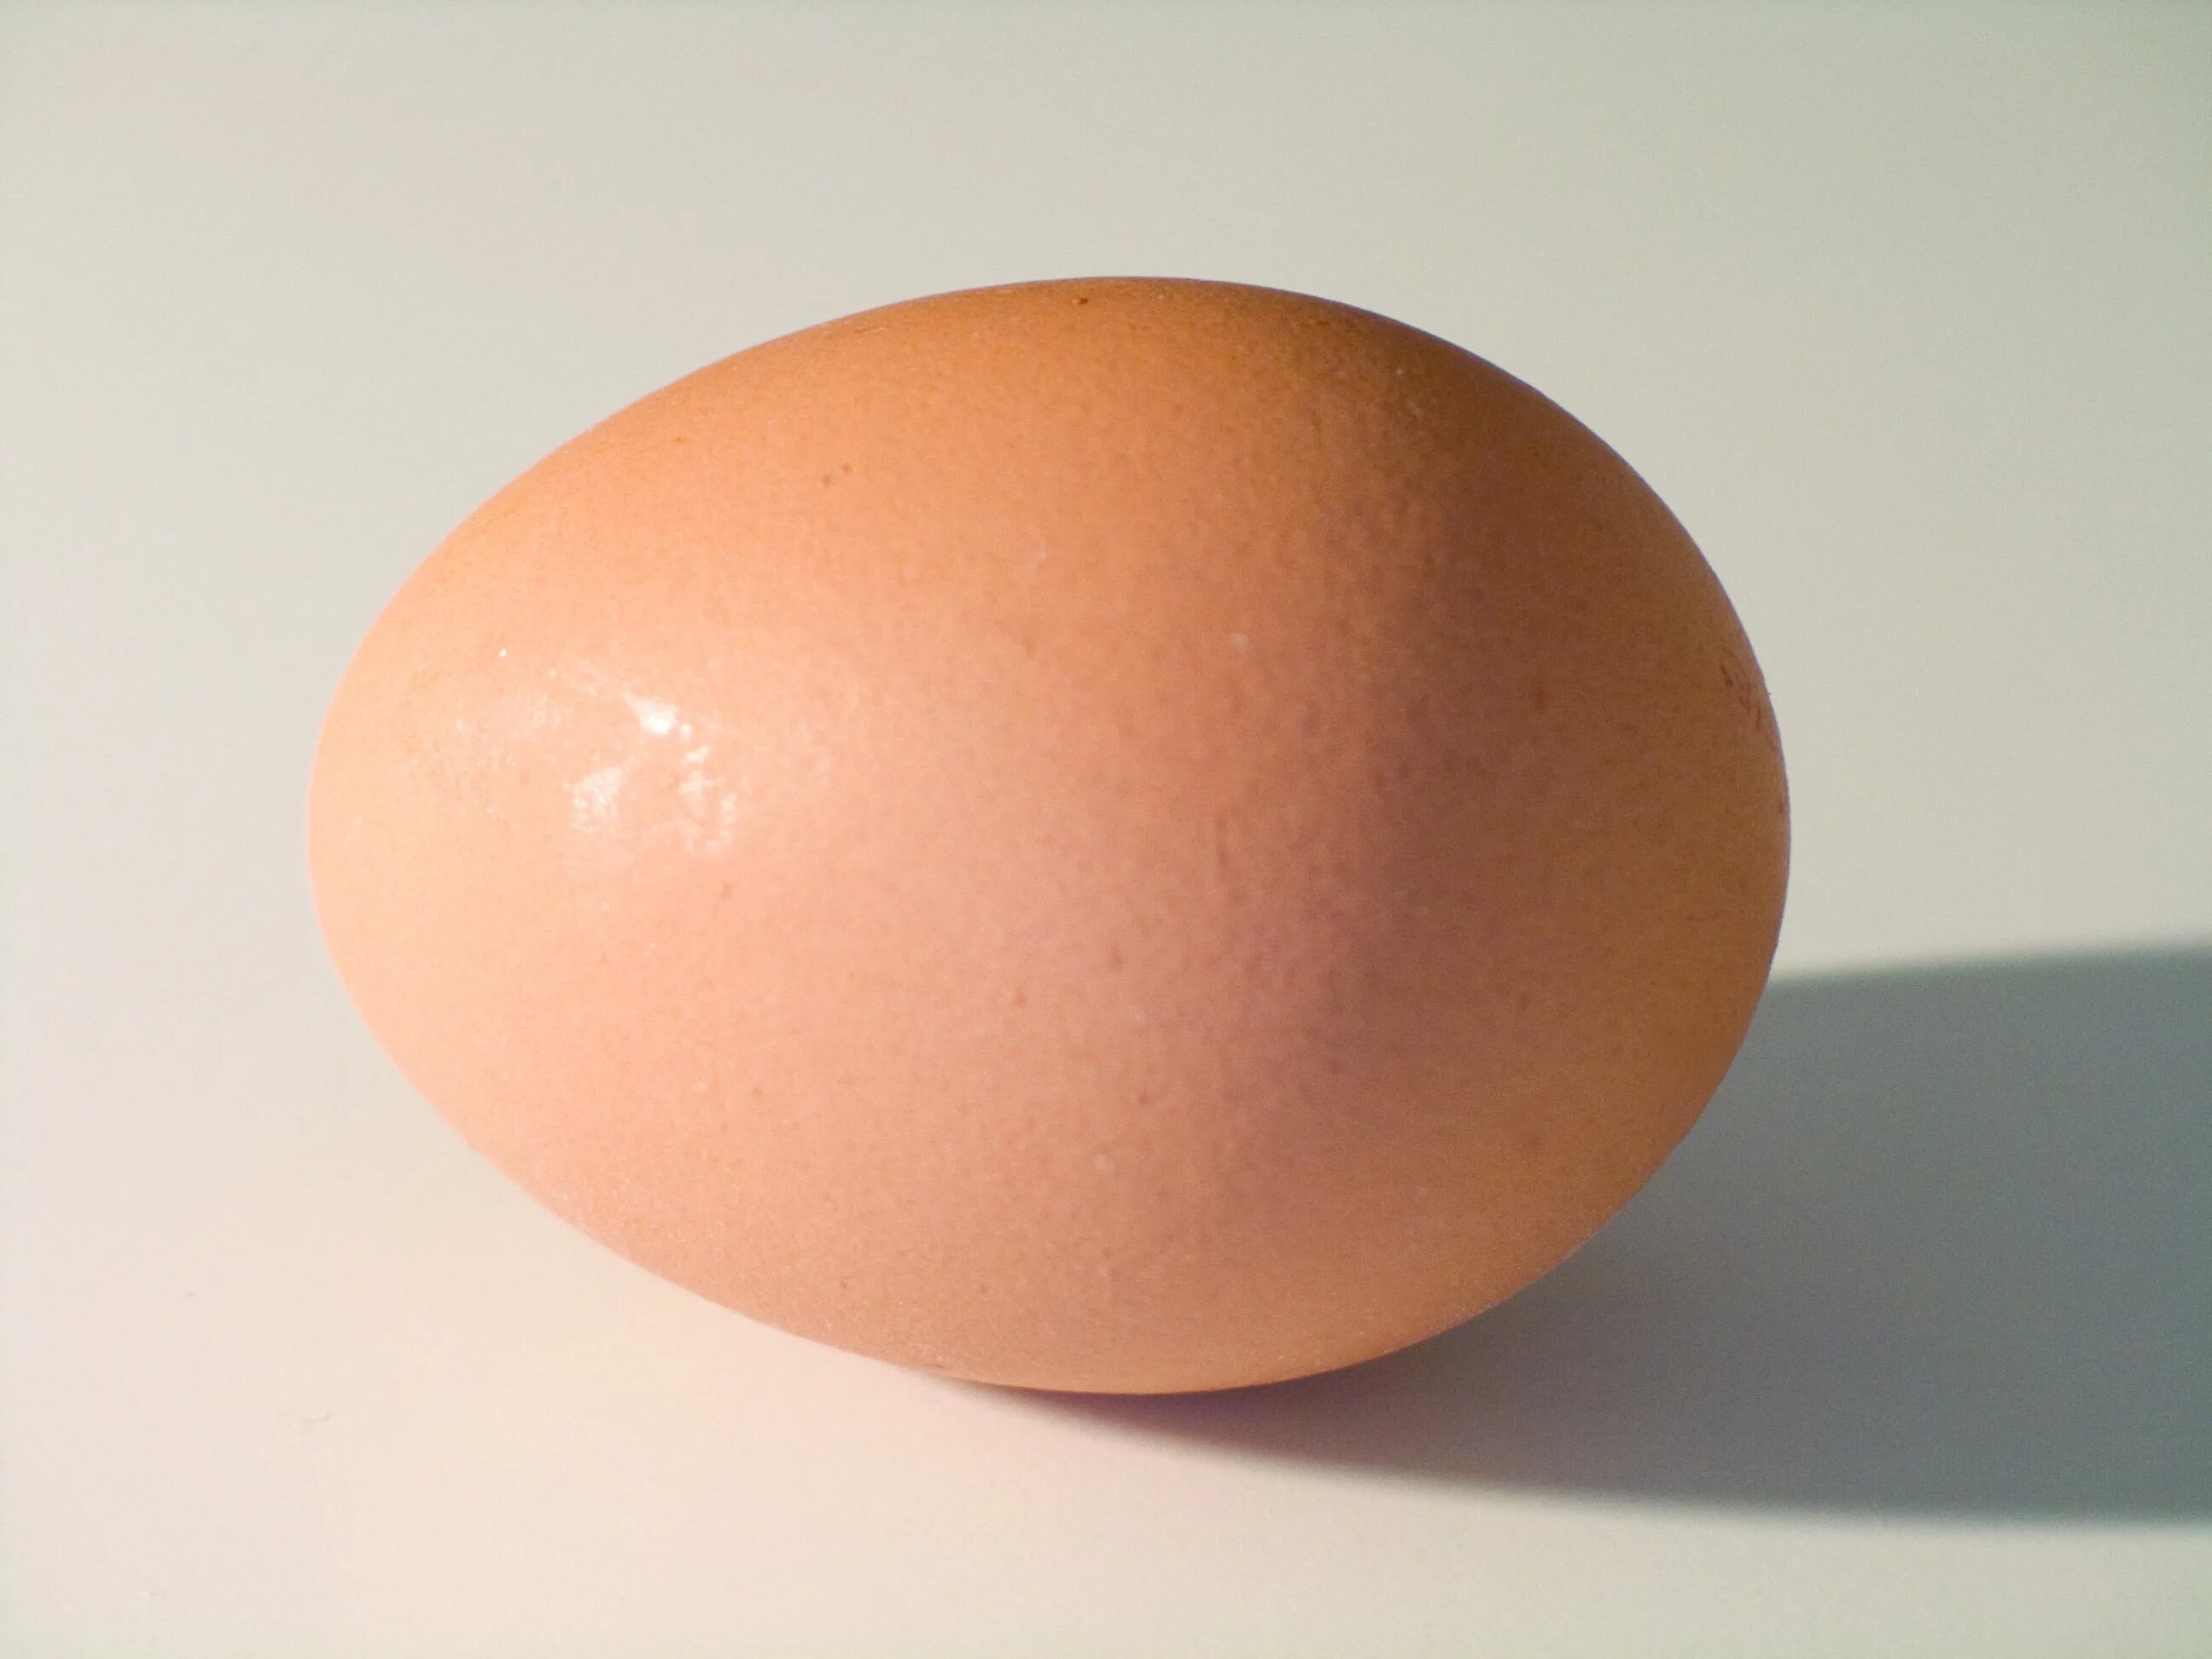 Купить челябинское яйцо. Яйцо куриное. Яйцо куриное одно. Изображение яйца. Яйцо референс.